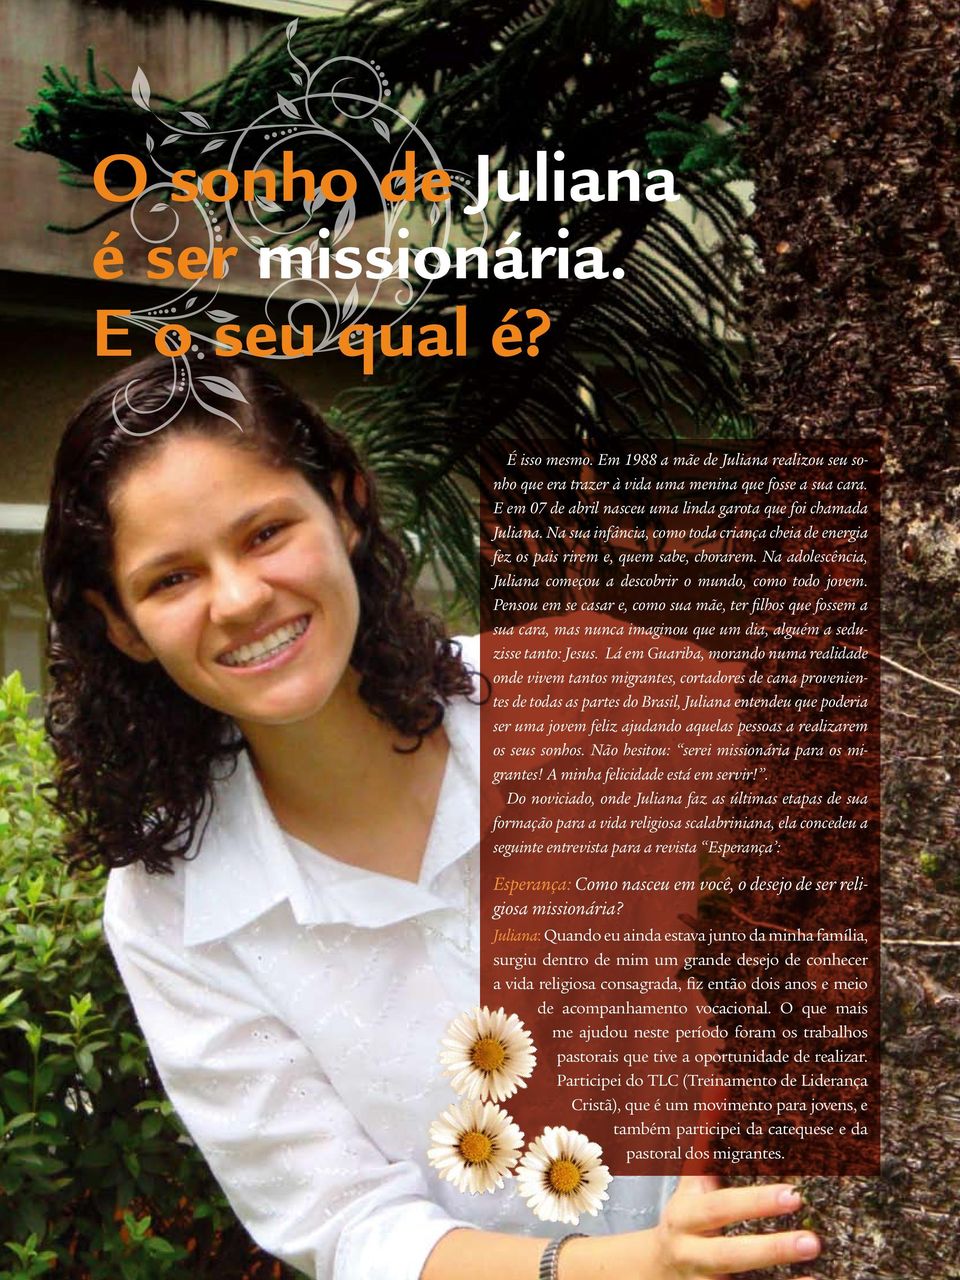 Na adolescência, Juliana começou a descobrir o mundo, como todo jovem.